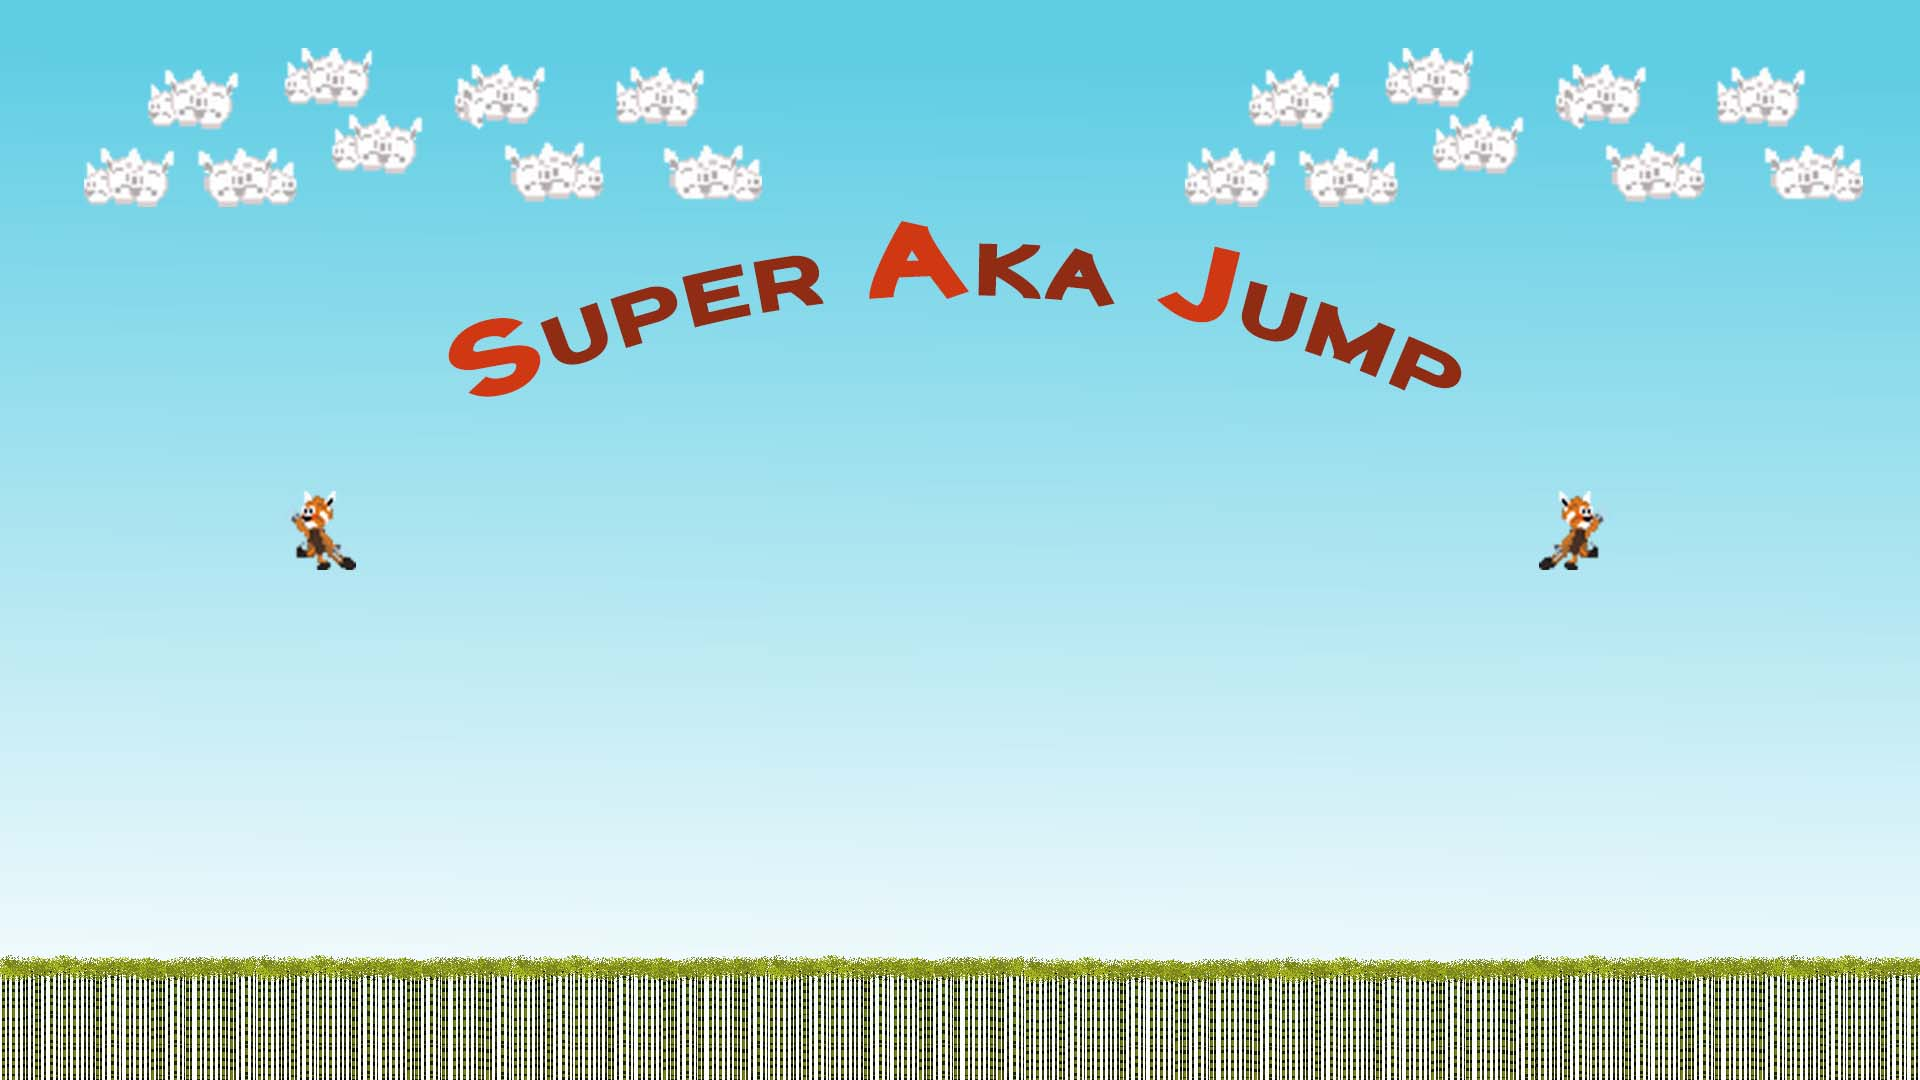 Super Aka Jump